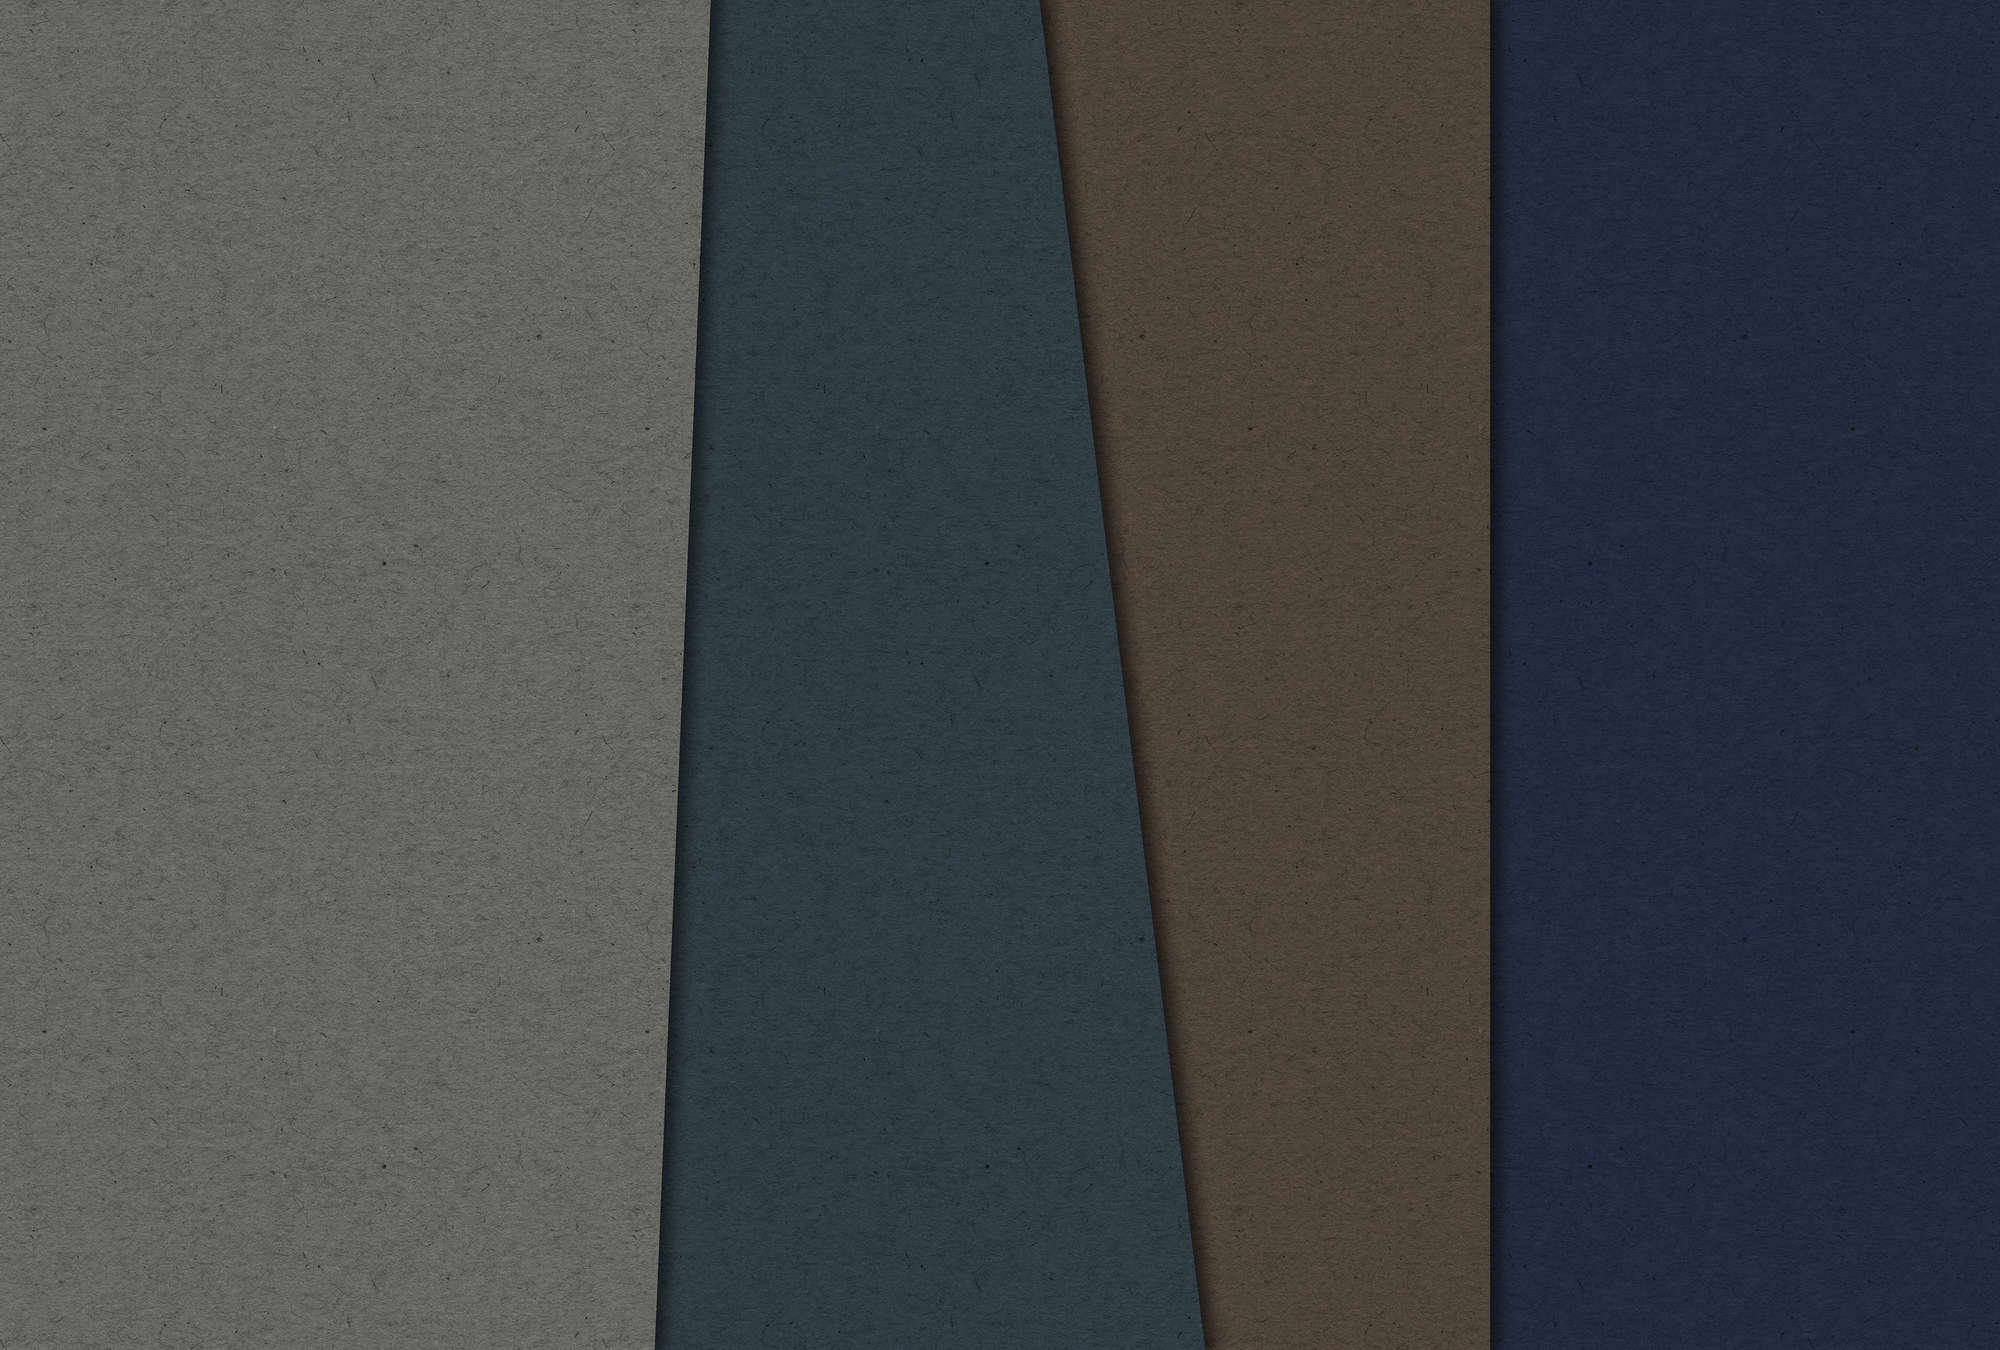             Layered Cardboard 2 - Papier peint structure carton avec champs de couleurs sombres - bleu, marron | Intissé lisse mat
        